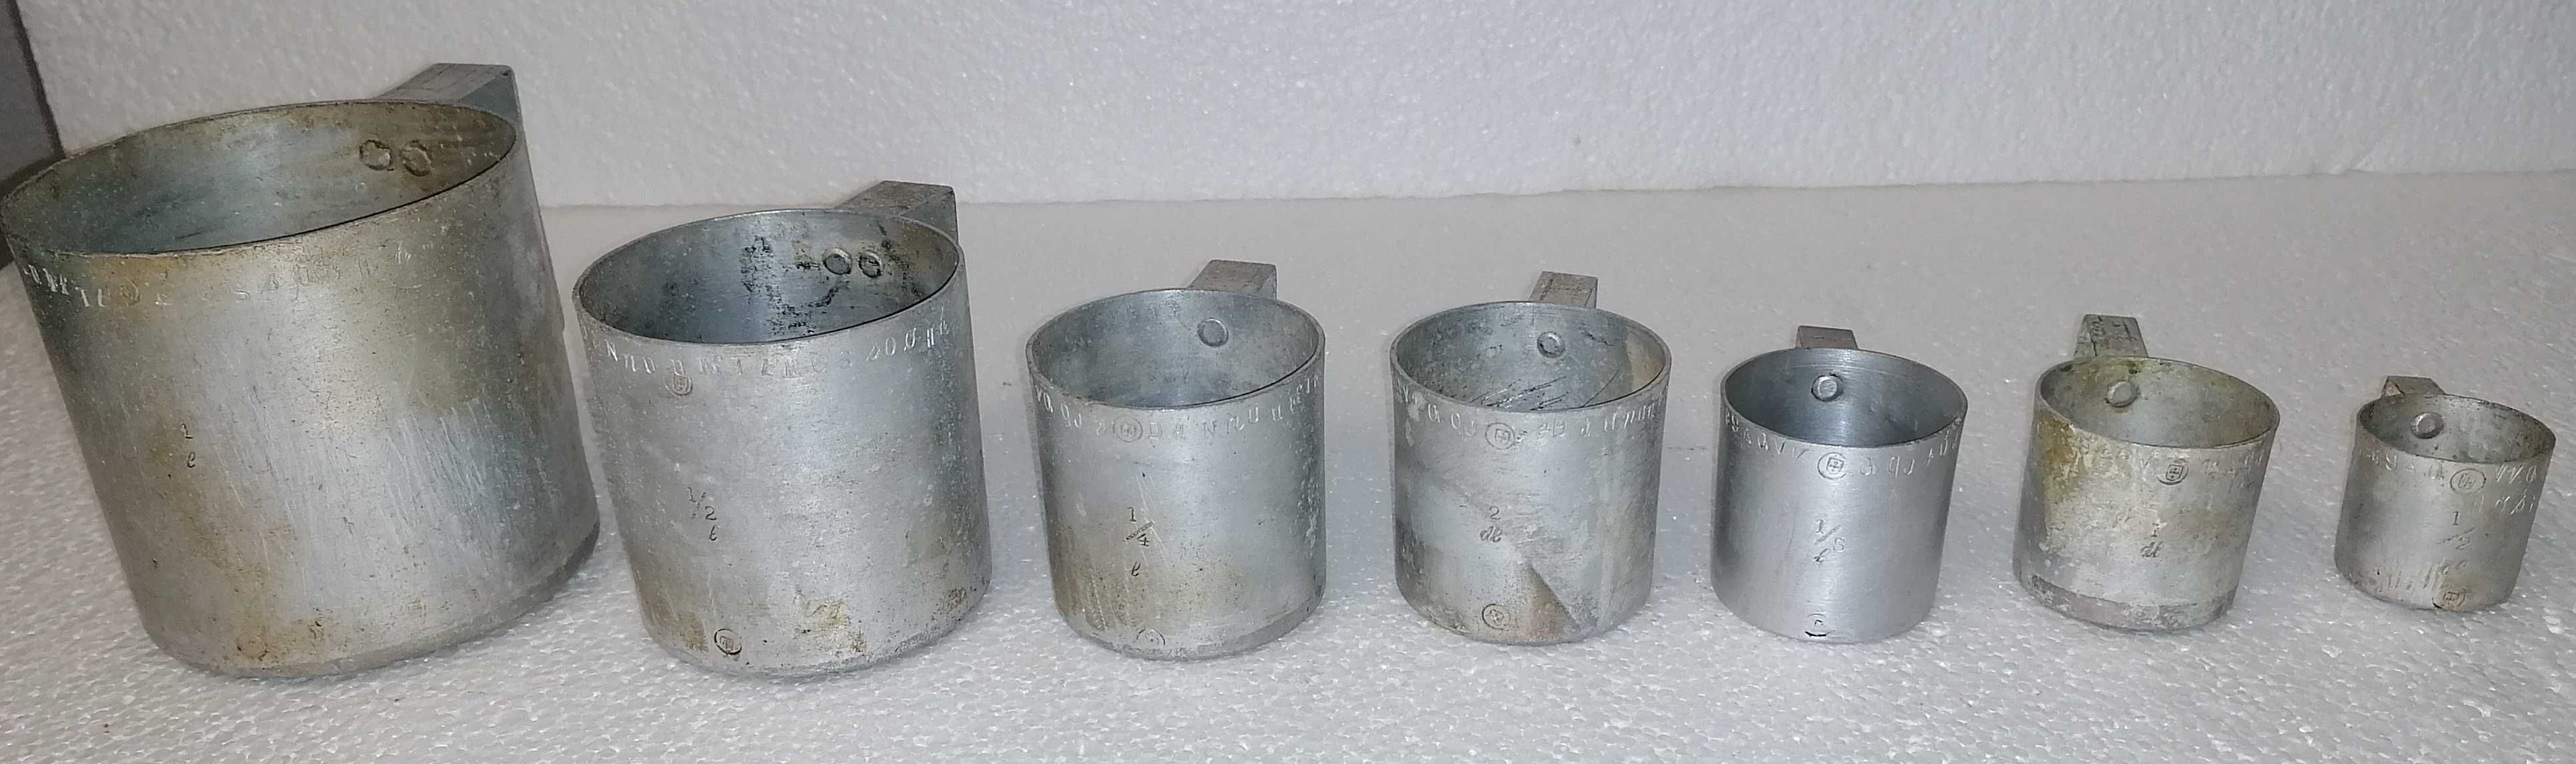 Copos de medidas para líquidos em alumínio, 7 un diferentes